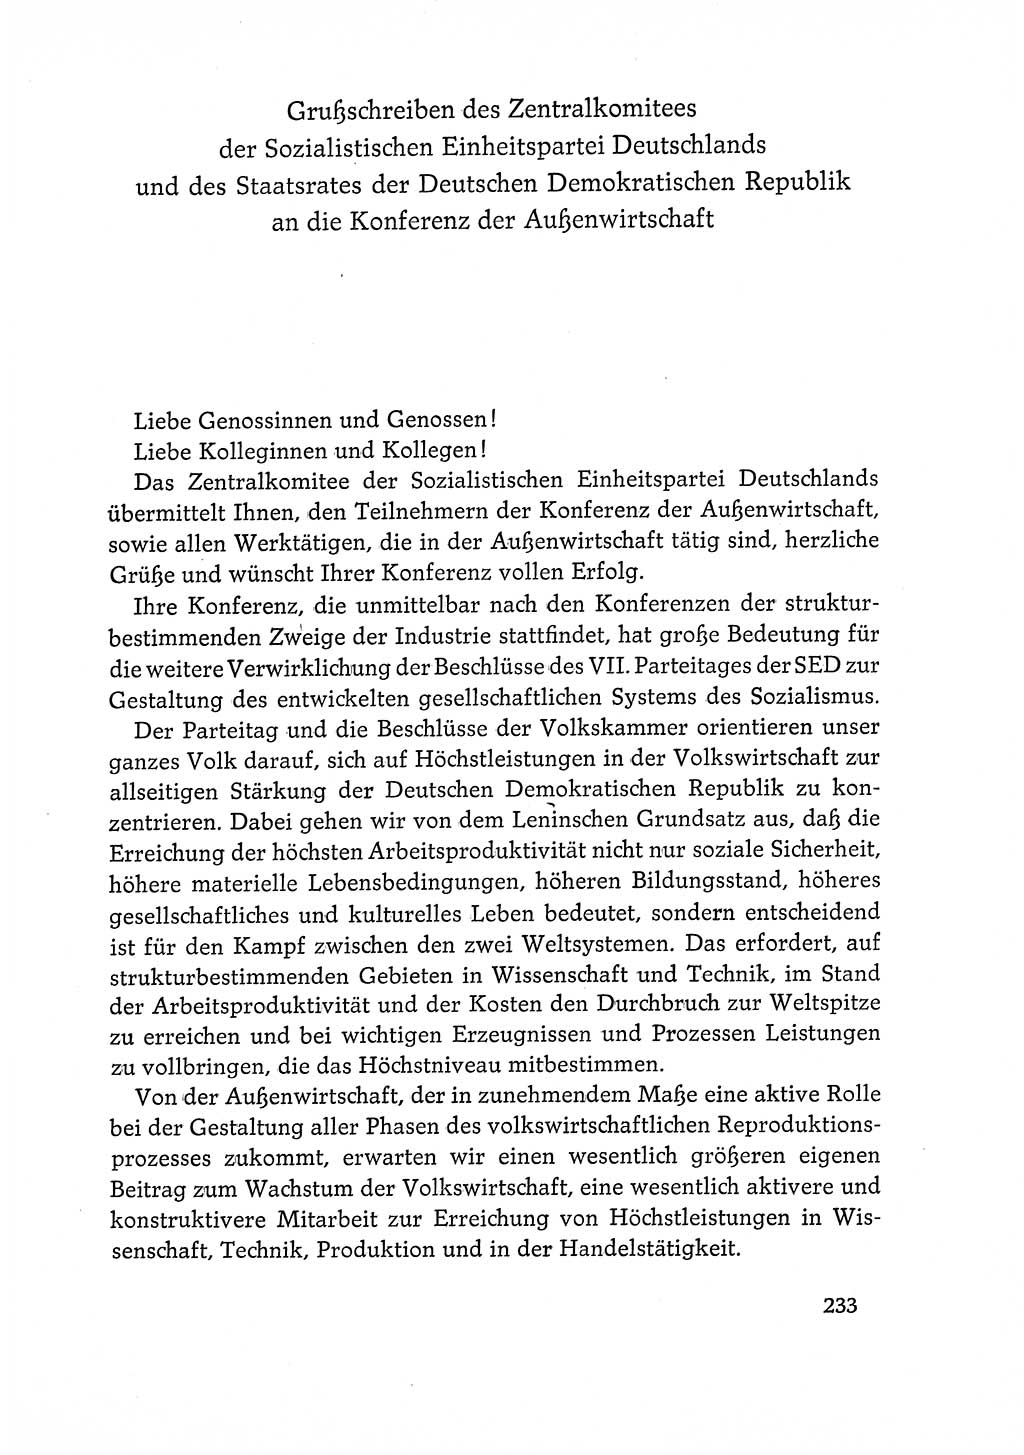 Dokumente der Sozialistischen Einheitspartei Deutschlands (SED) [Deutsche Demokratische Republik (DDR)] 1968-1969, Seite 233 (Dok. SED DDR 1968-1969, S. 233)